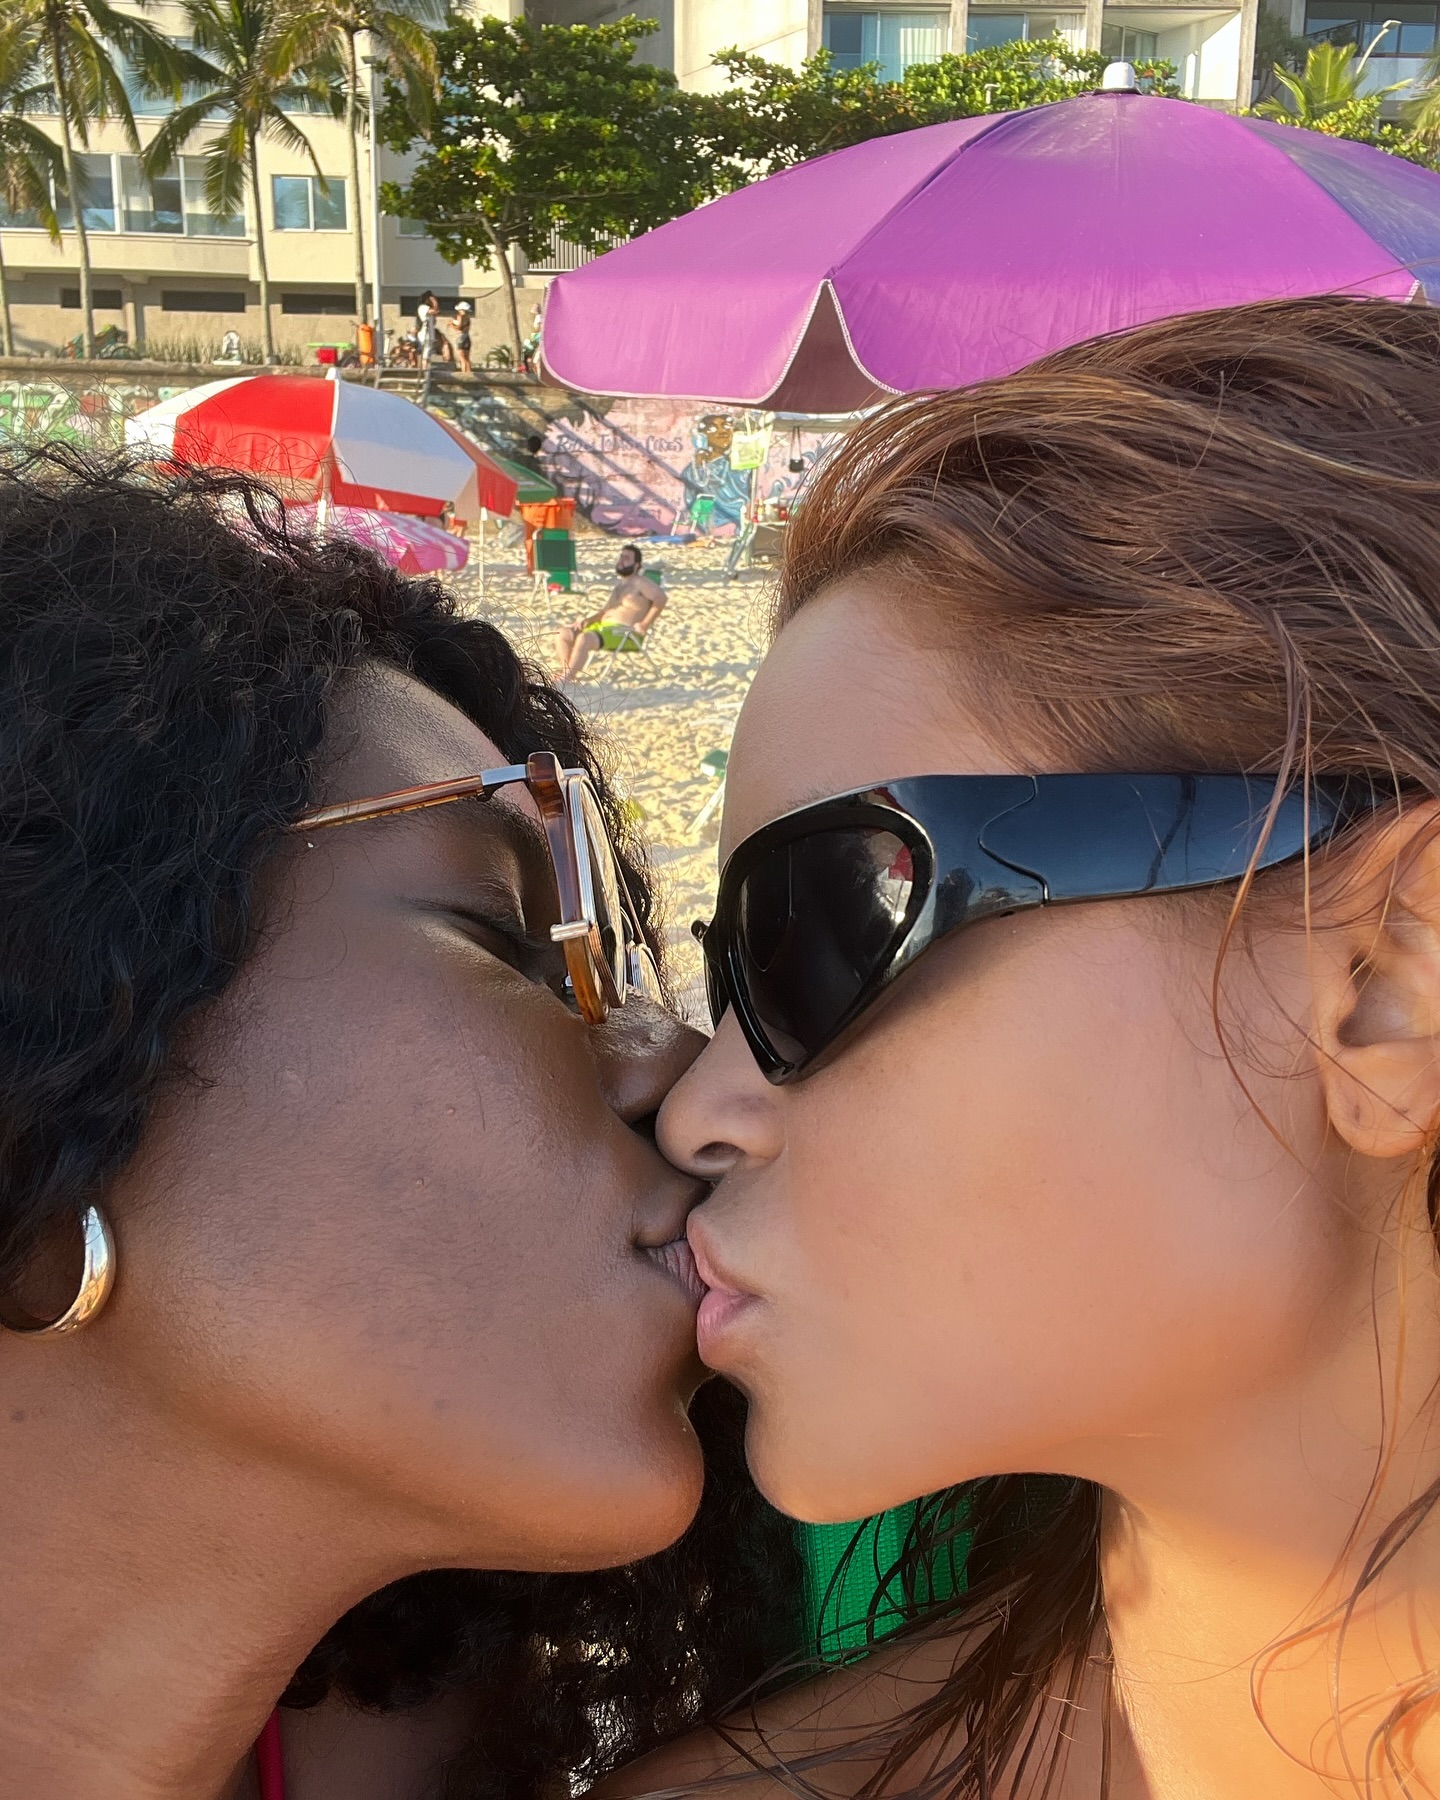 Lucy Alves postou foto de beijo com Indira Nascimento e recebeu elogios - Foto: Reprodução/ Instagram@lucyalves